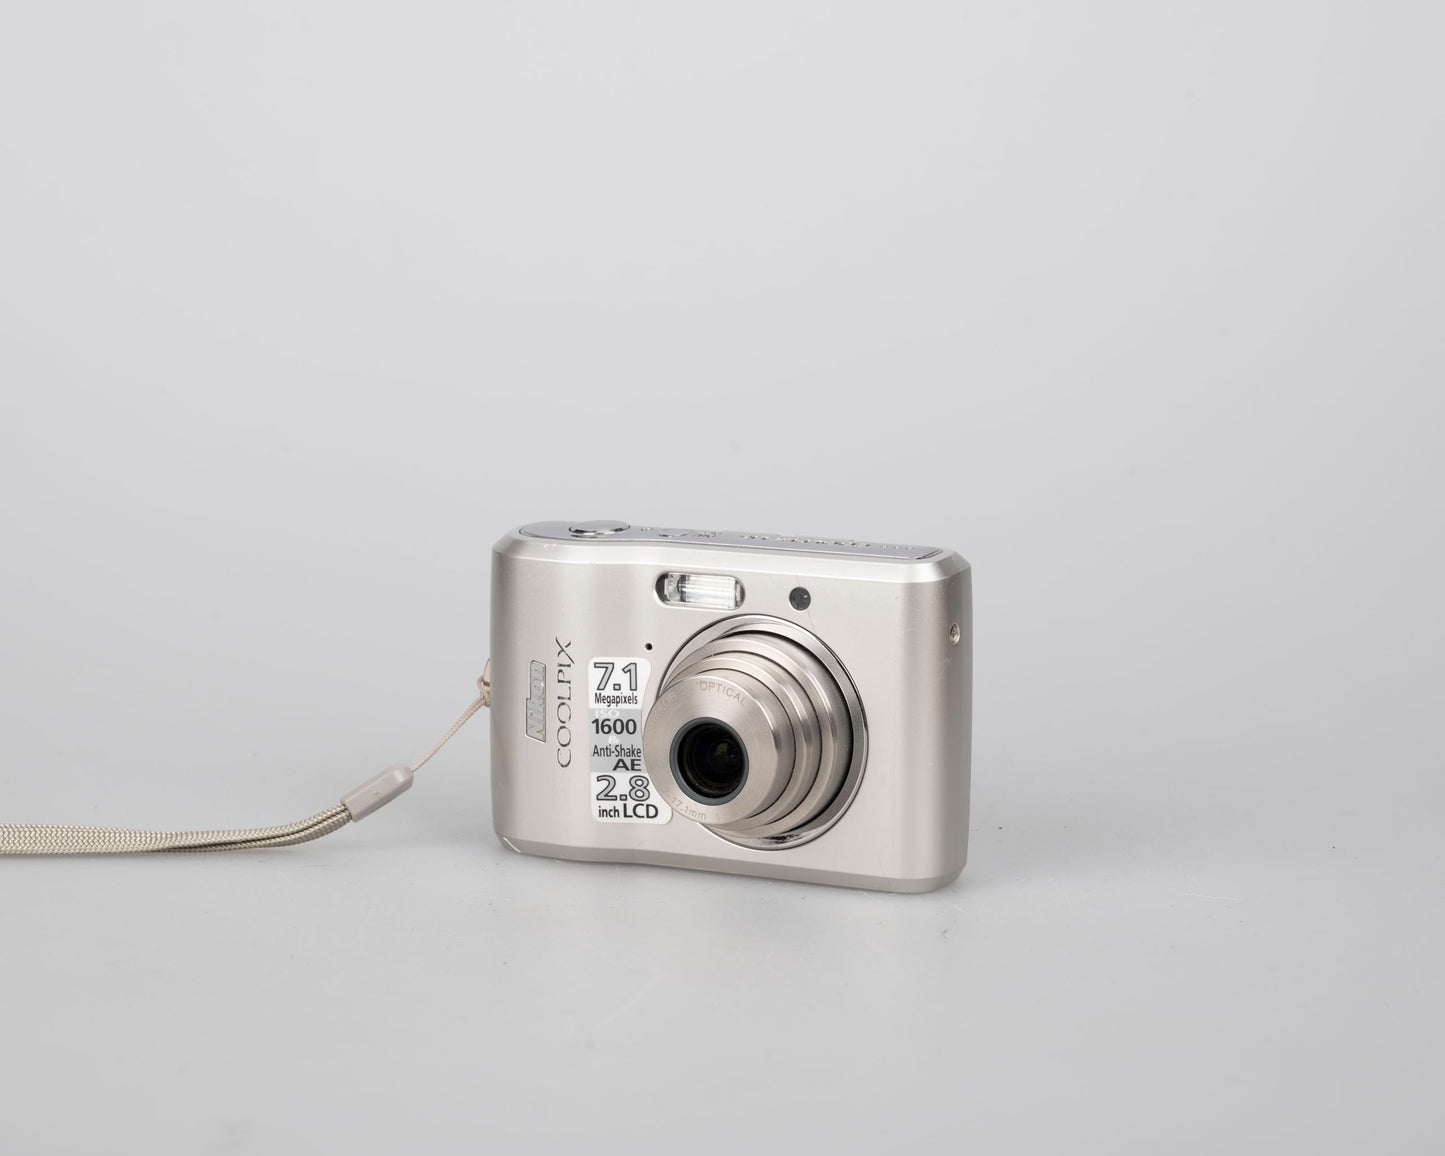 Appareil photo numérique à capteur CCD Nikon Coolpix L16 7,1 MP avec carte SD de 1 Go + boîte d'origine et accessoires (utilise des piles AA)